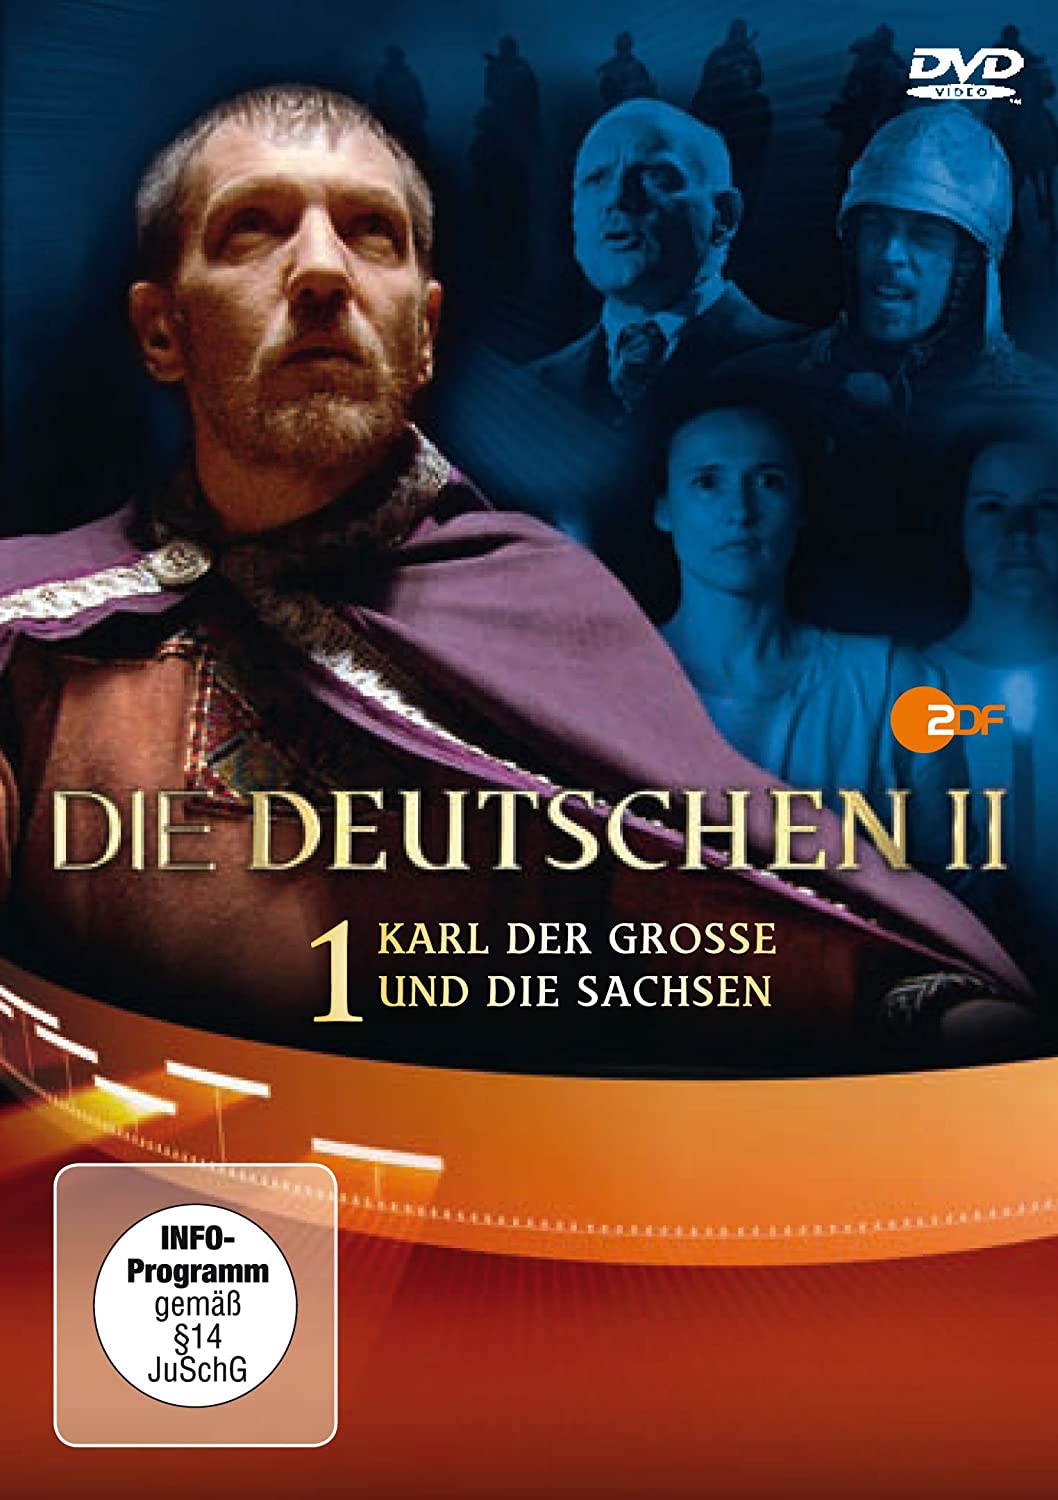 DIE DEUTSCHEN - Staffel II / Teil 1: Karl der Große und die Sachsen